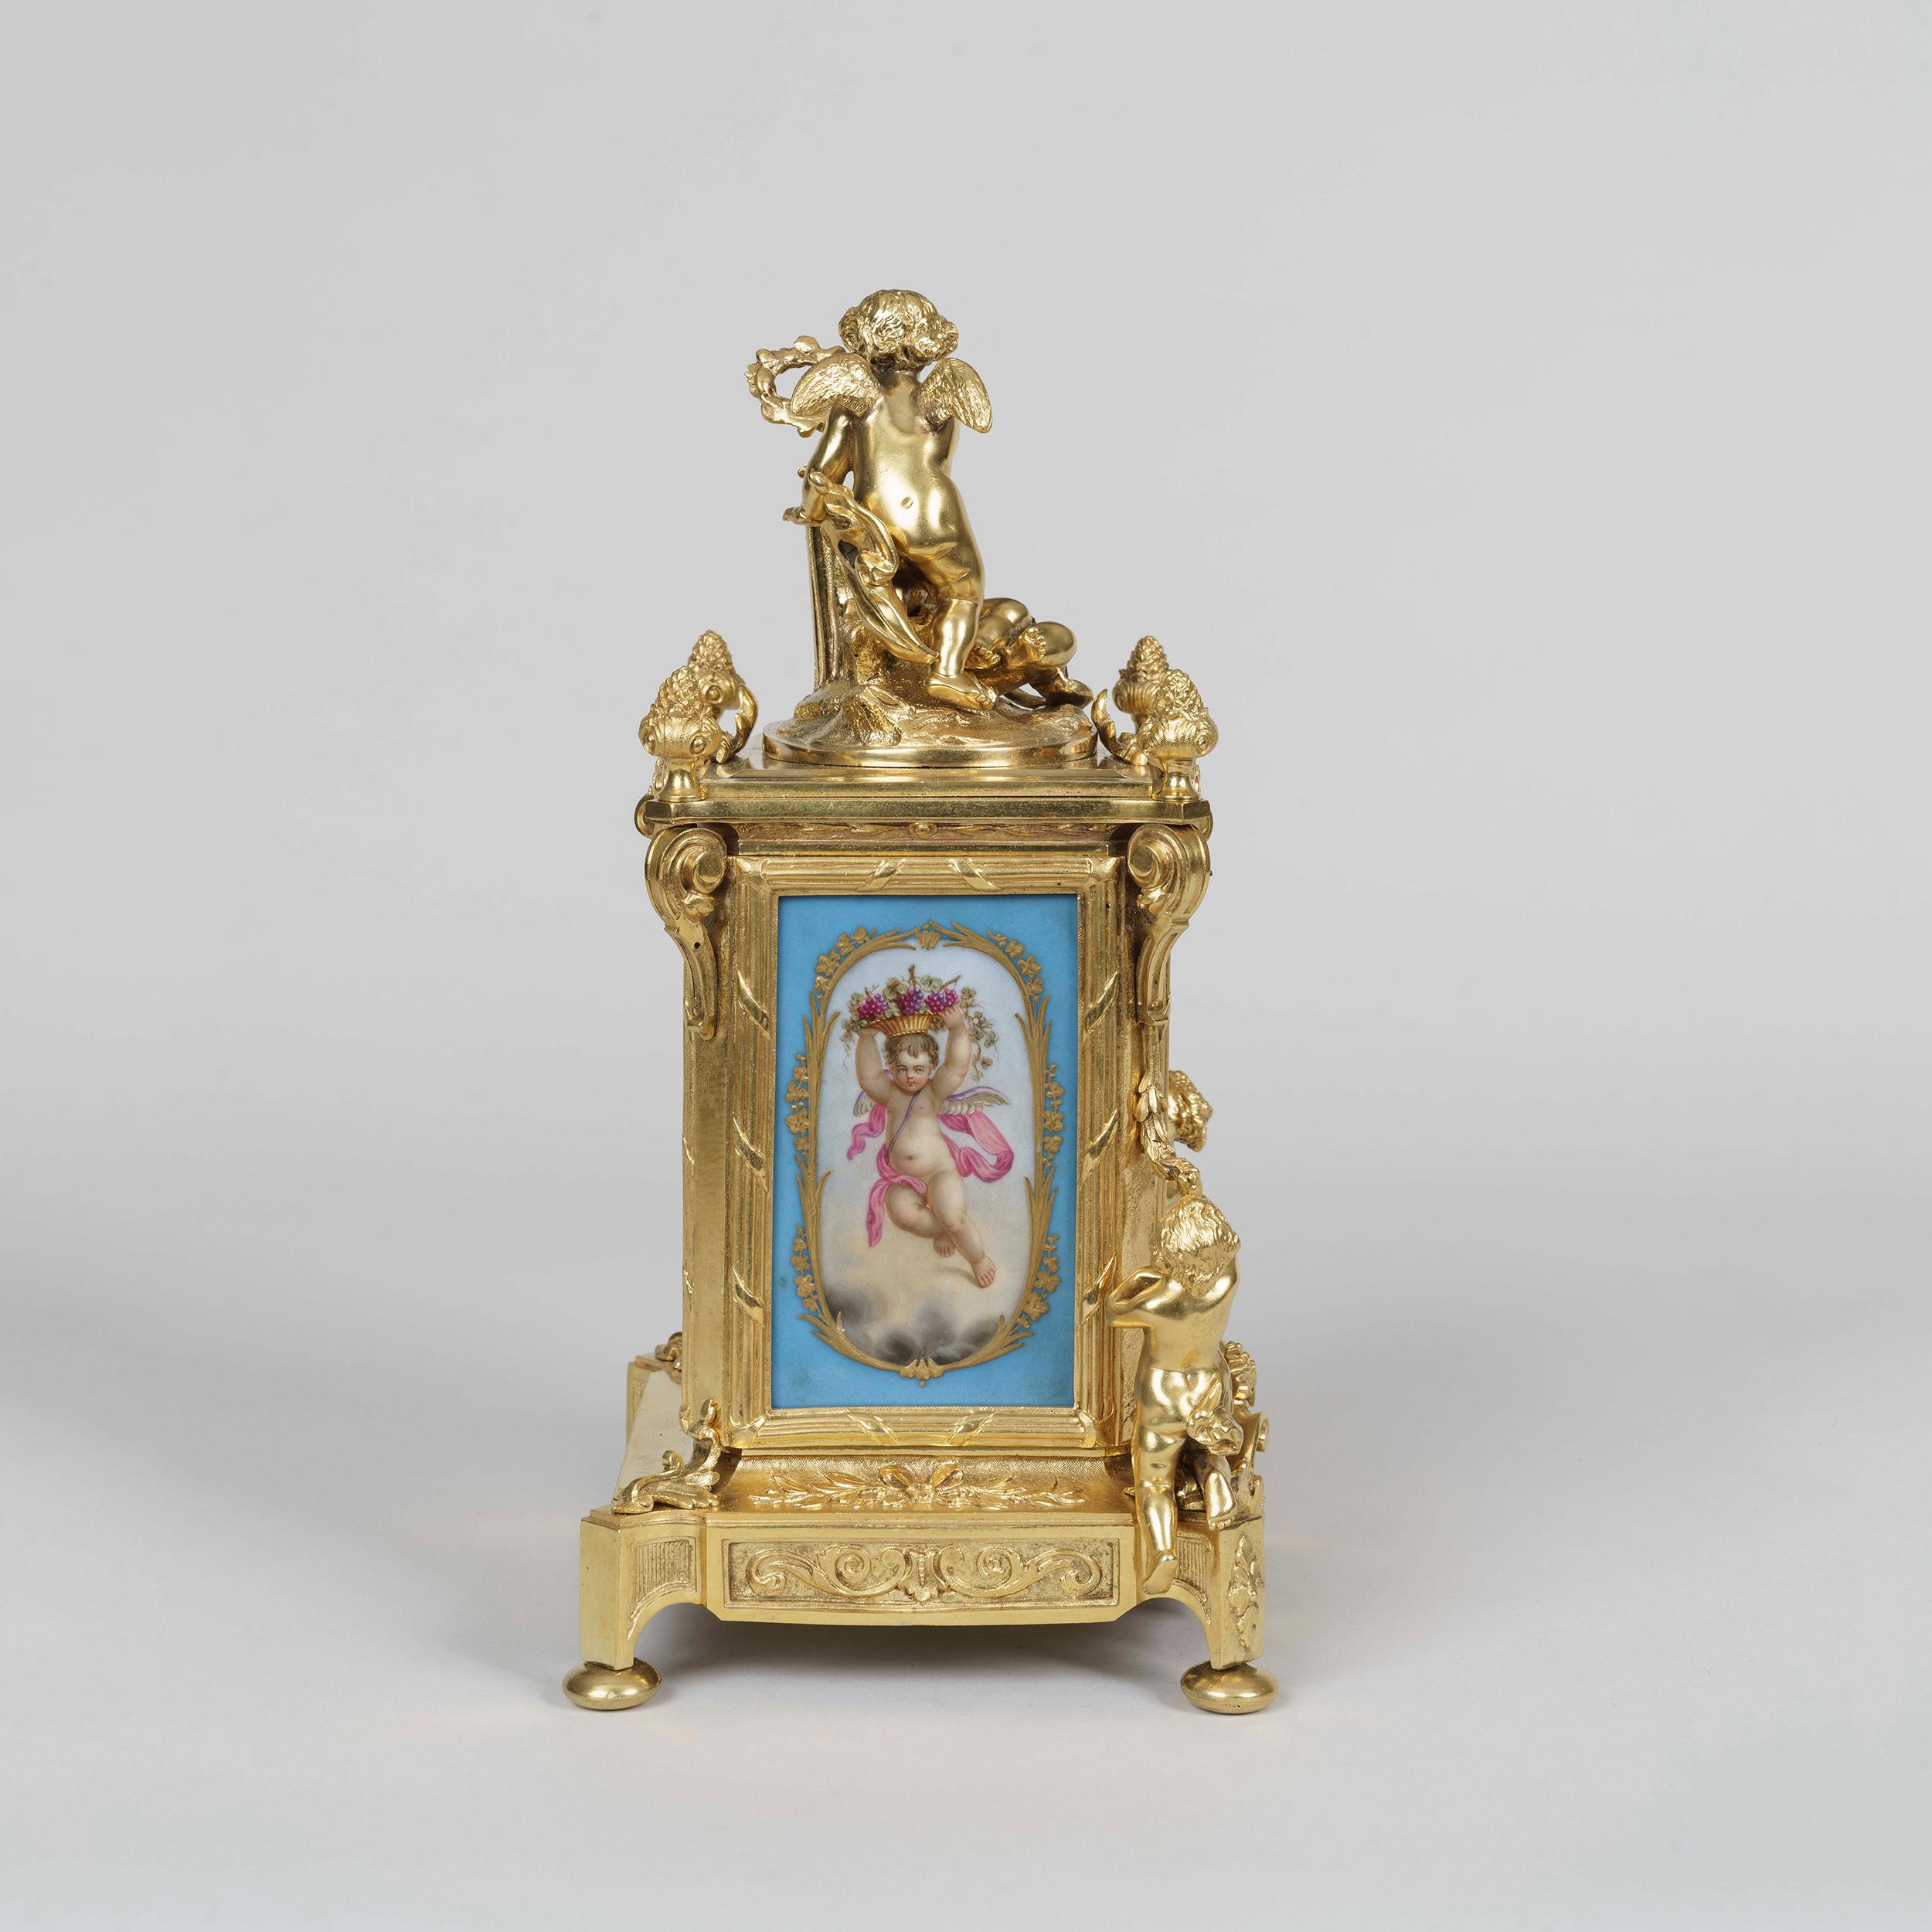 Garniture de pendule de style Louis XVI
Par Le Roy et Fils

Le boîtier de l'horloge en bronze doré et les candélabres qui l'accompagnent sont habillés de panneaux polychromes bleus de style 